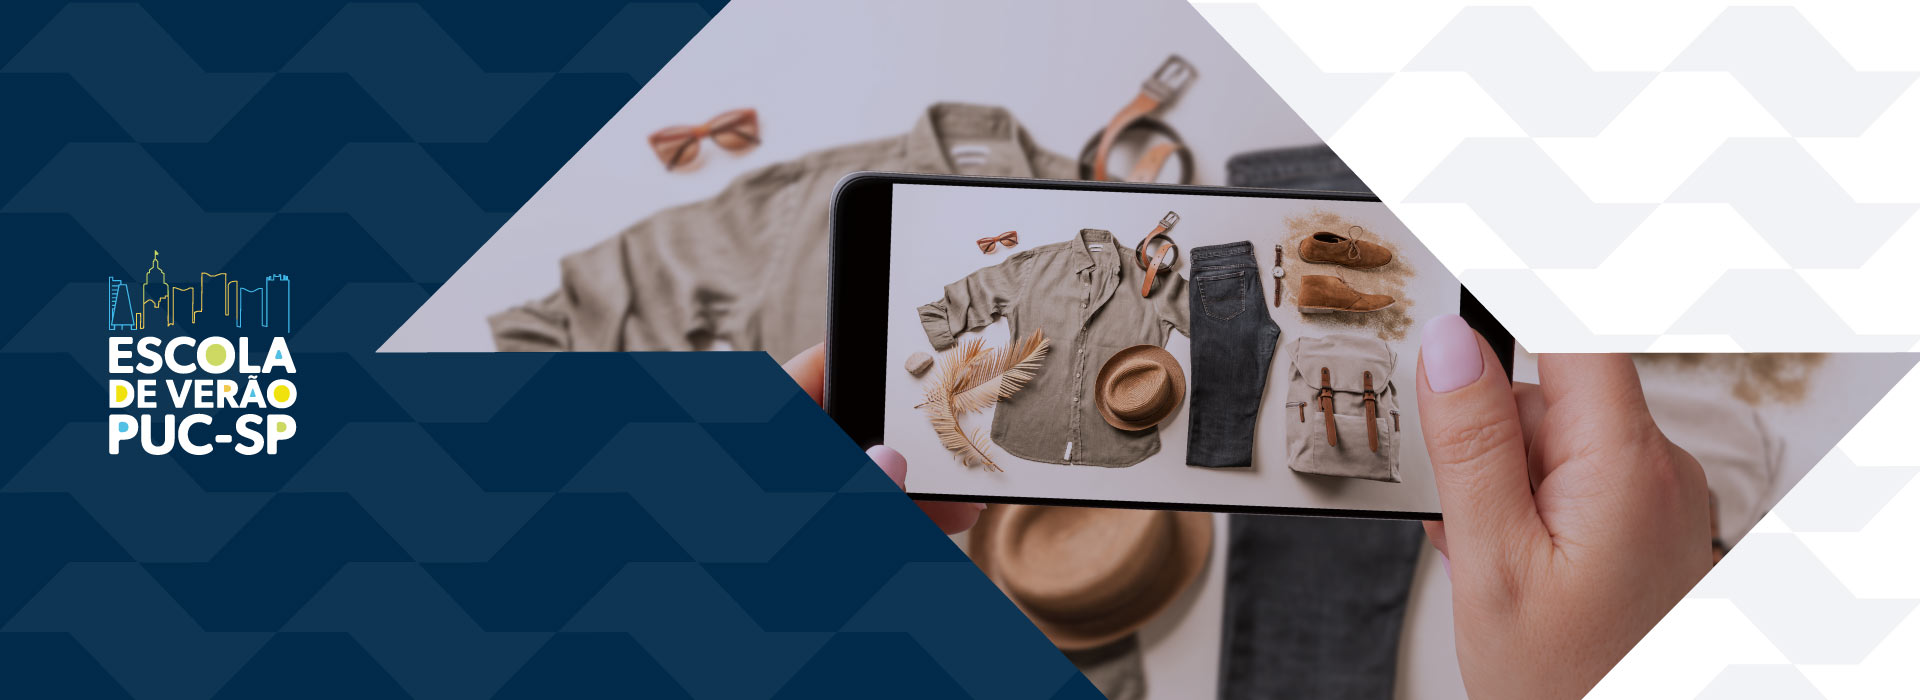 Imagem ilustrativa mostra mao segurando celular enquanto fotografa roupas